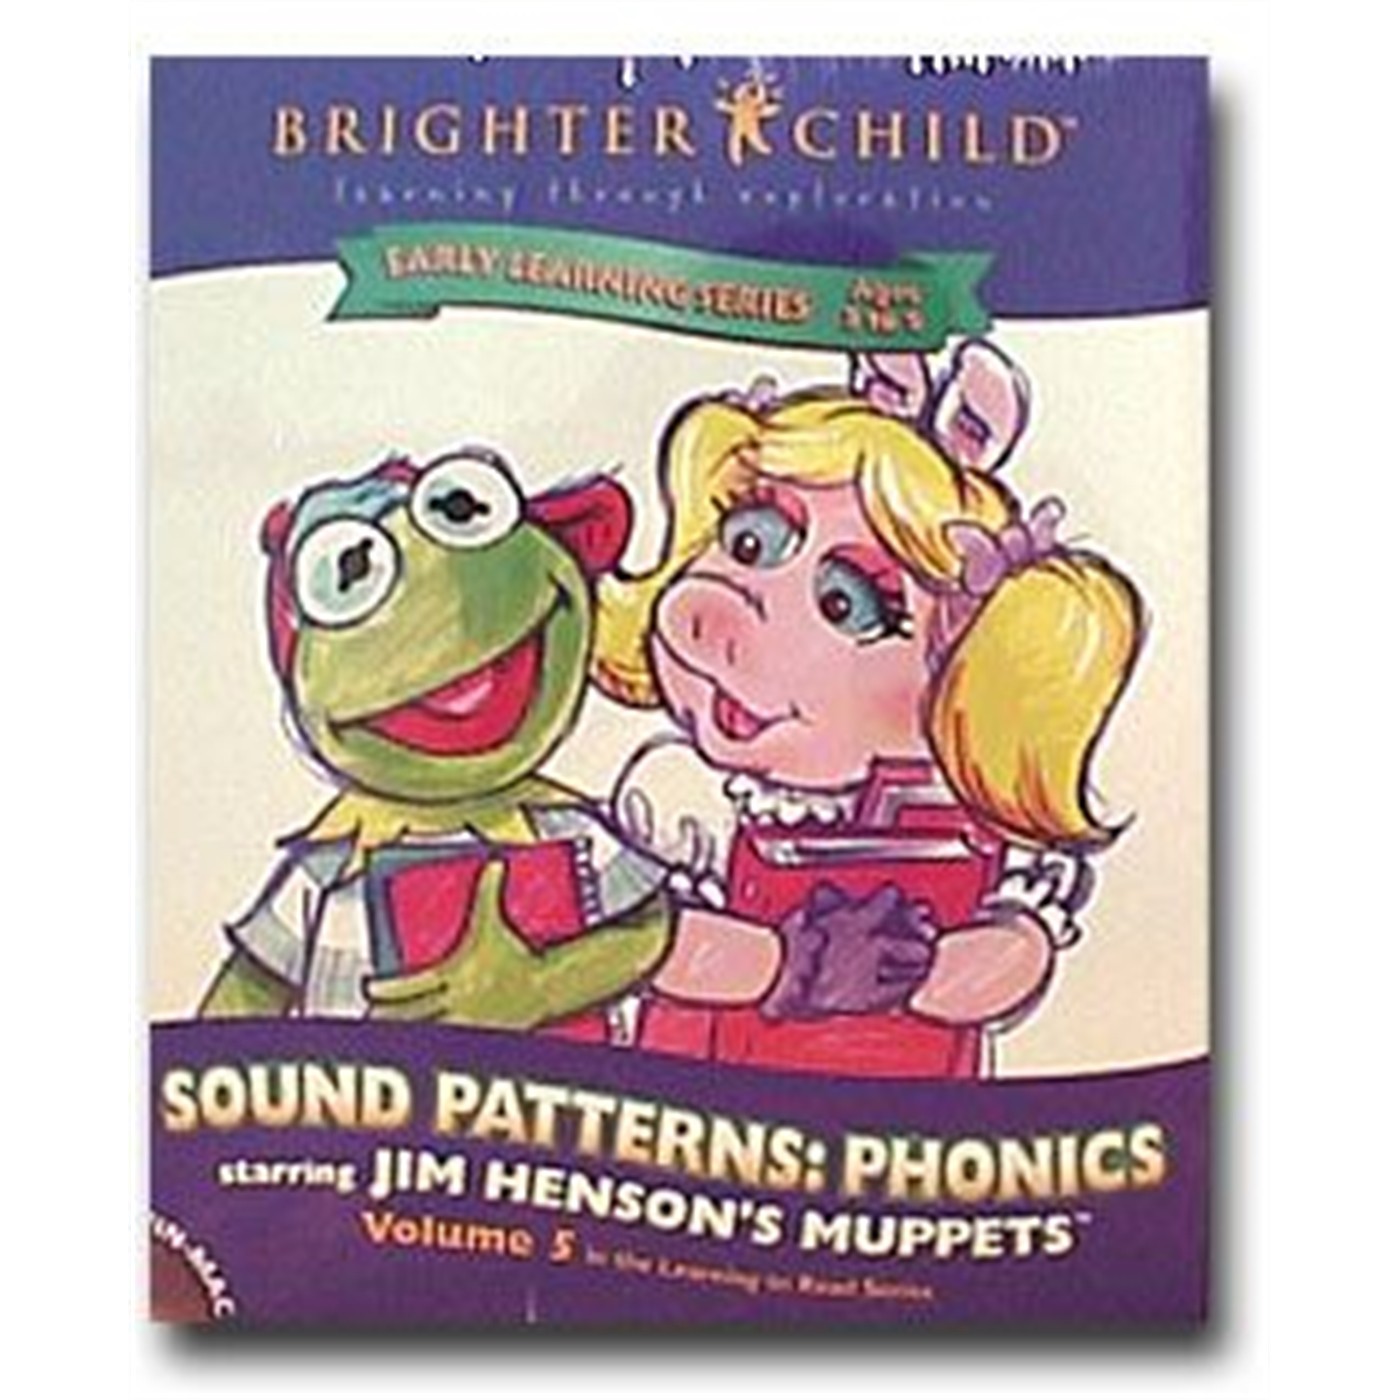 Muppets Software: Sound Patterns: Phonics